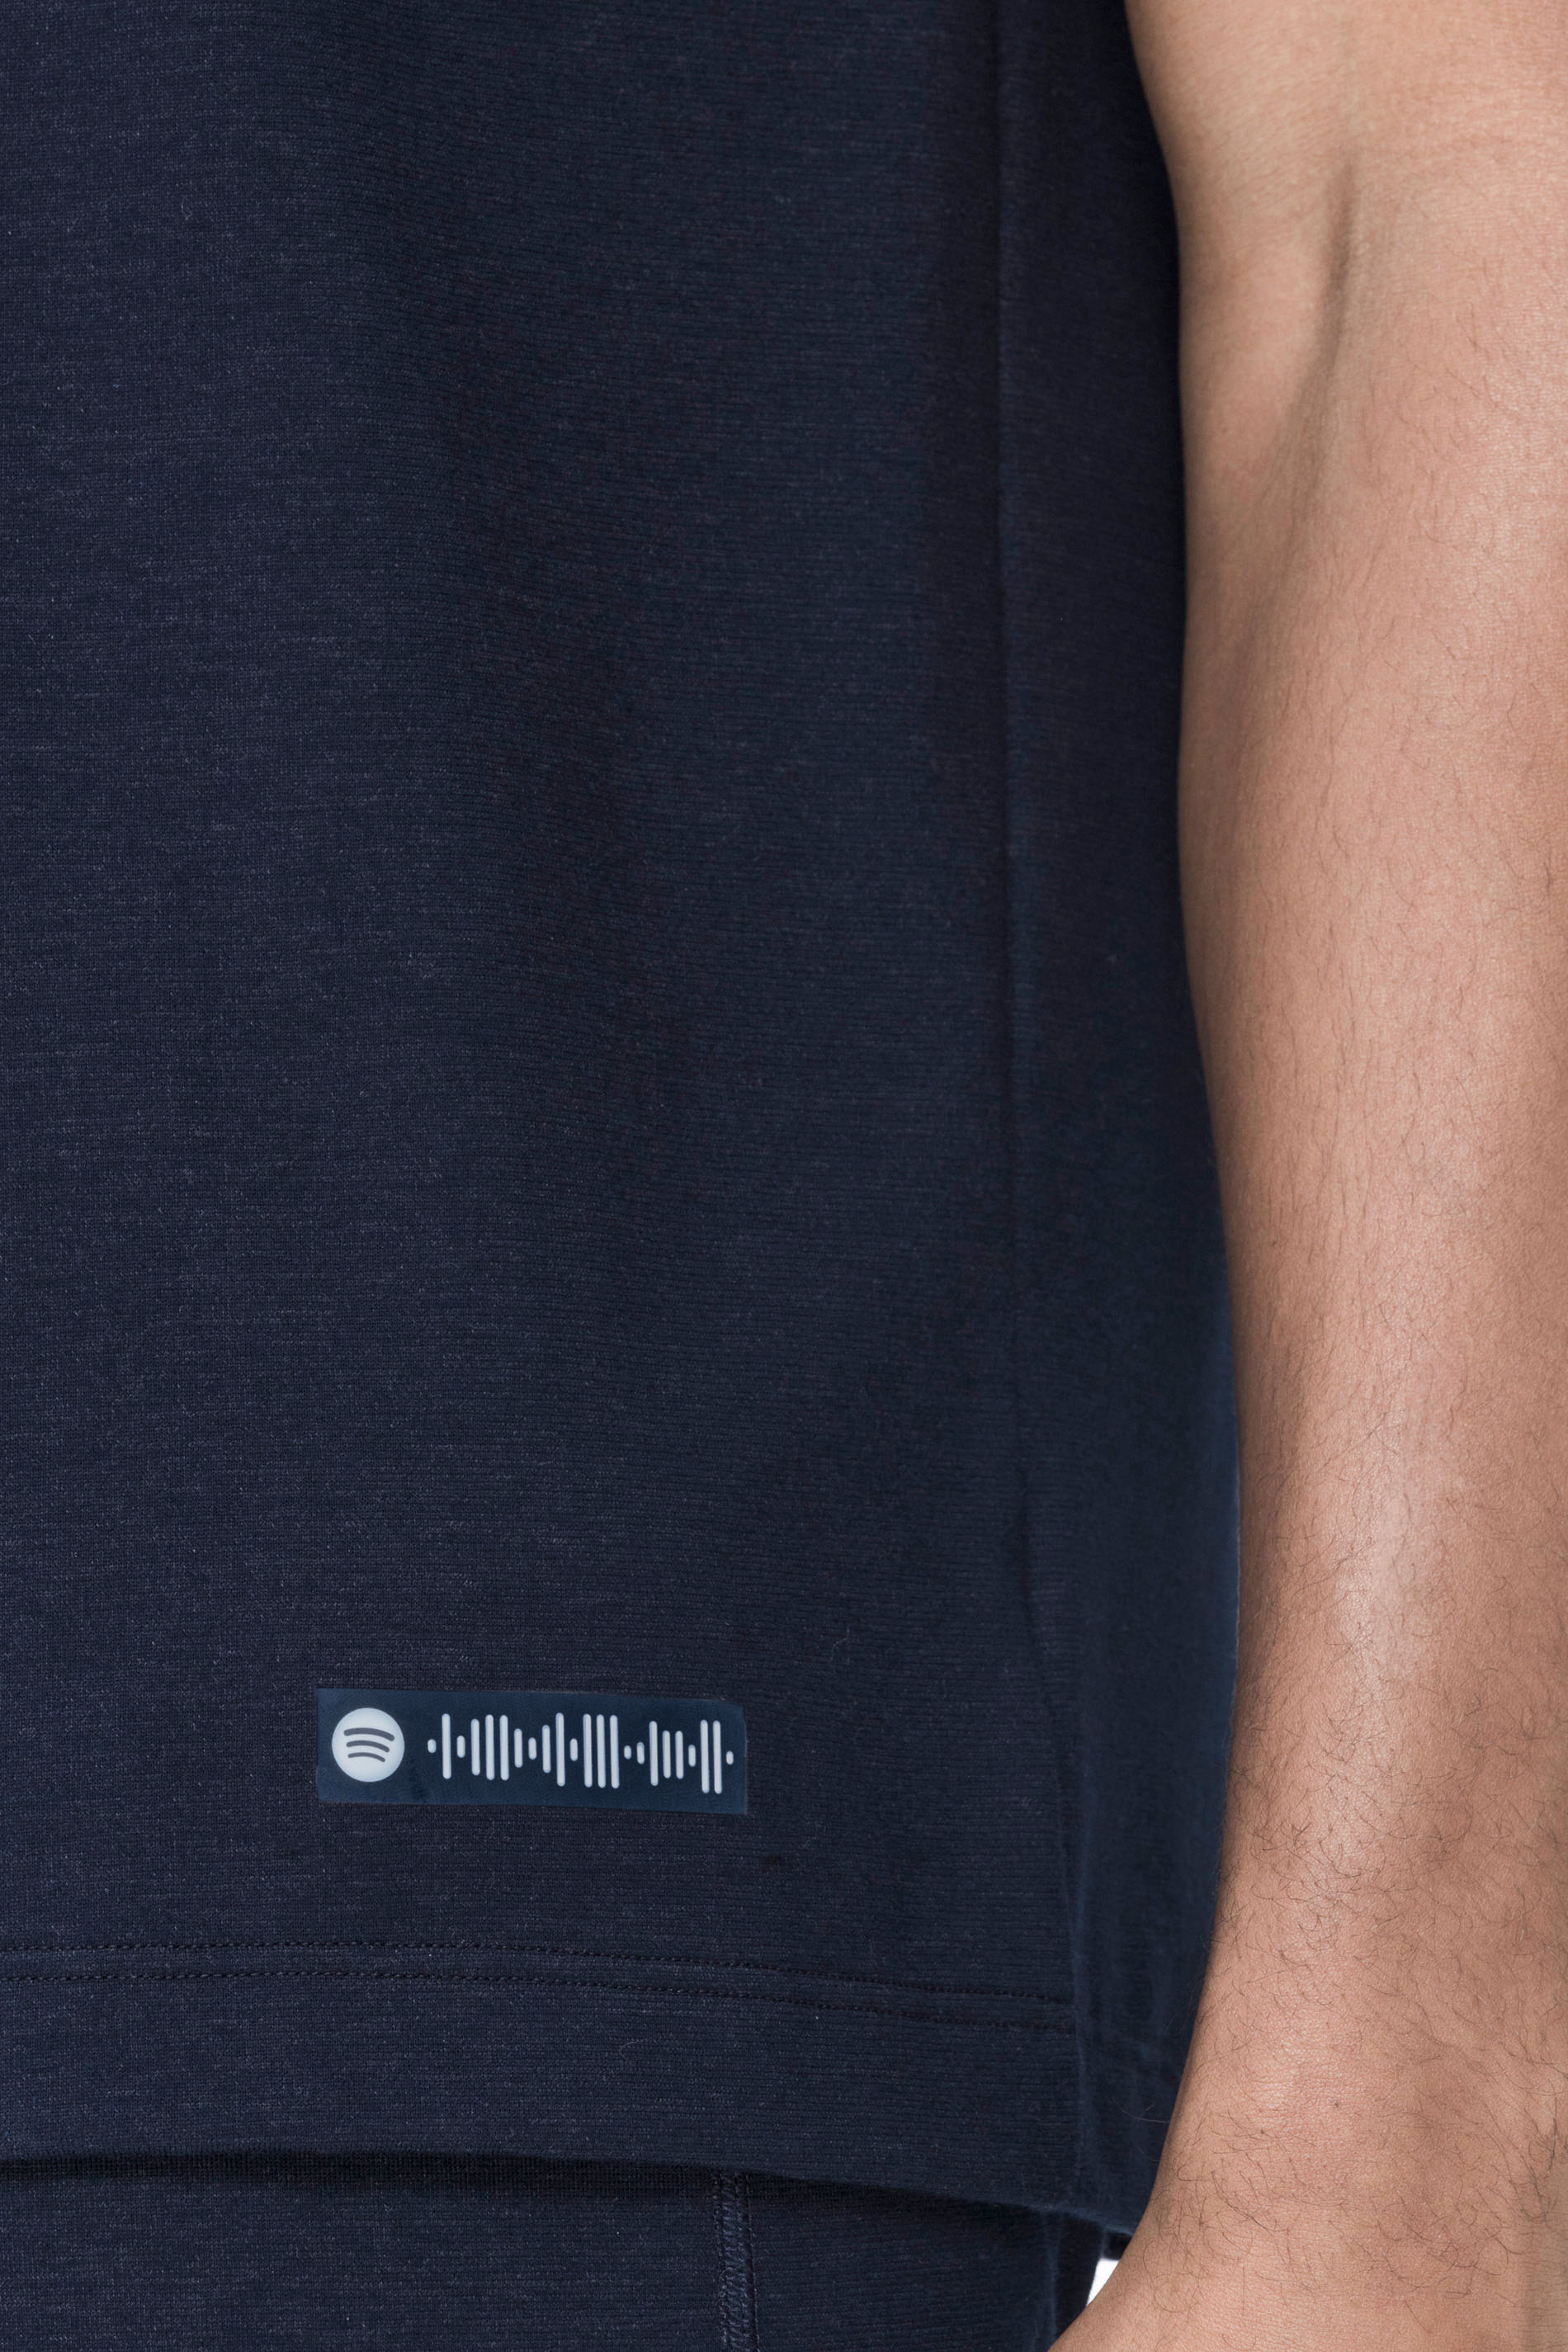 T-Shirt Yacht Blue Serie Zzzleepwear Detailansicht 01 | mey®